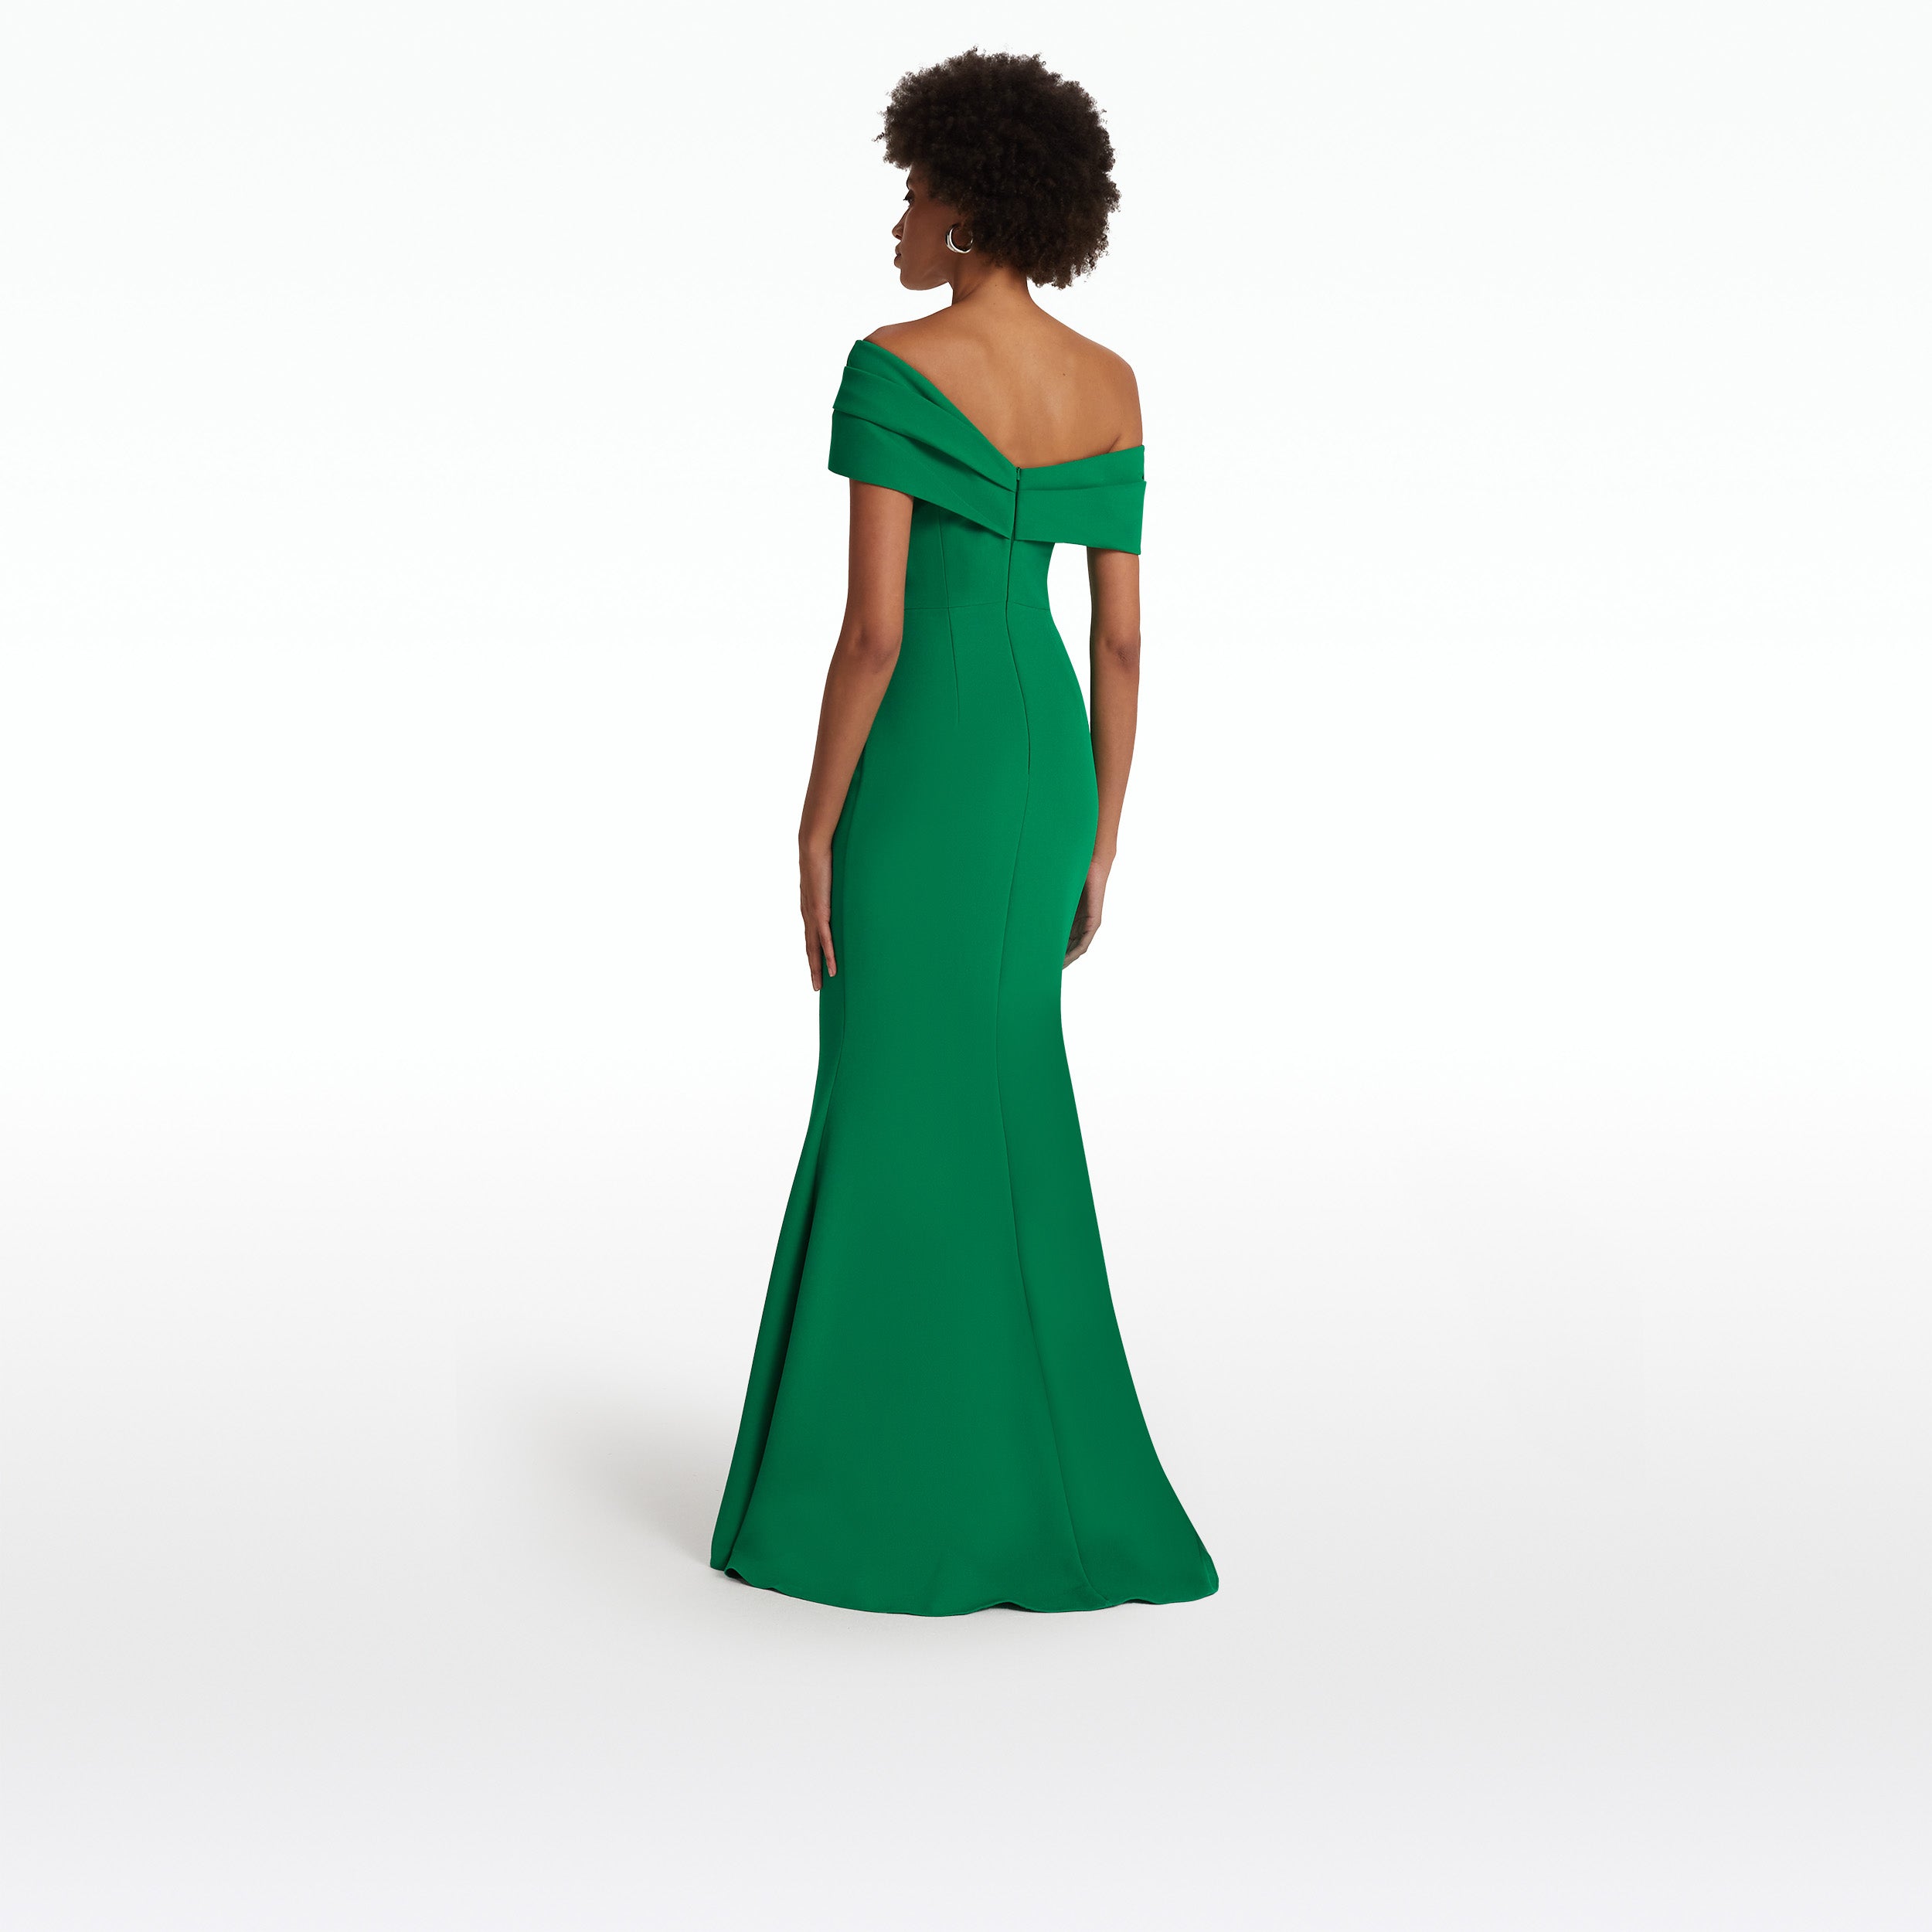 Rossa Emerald Long Dress